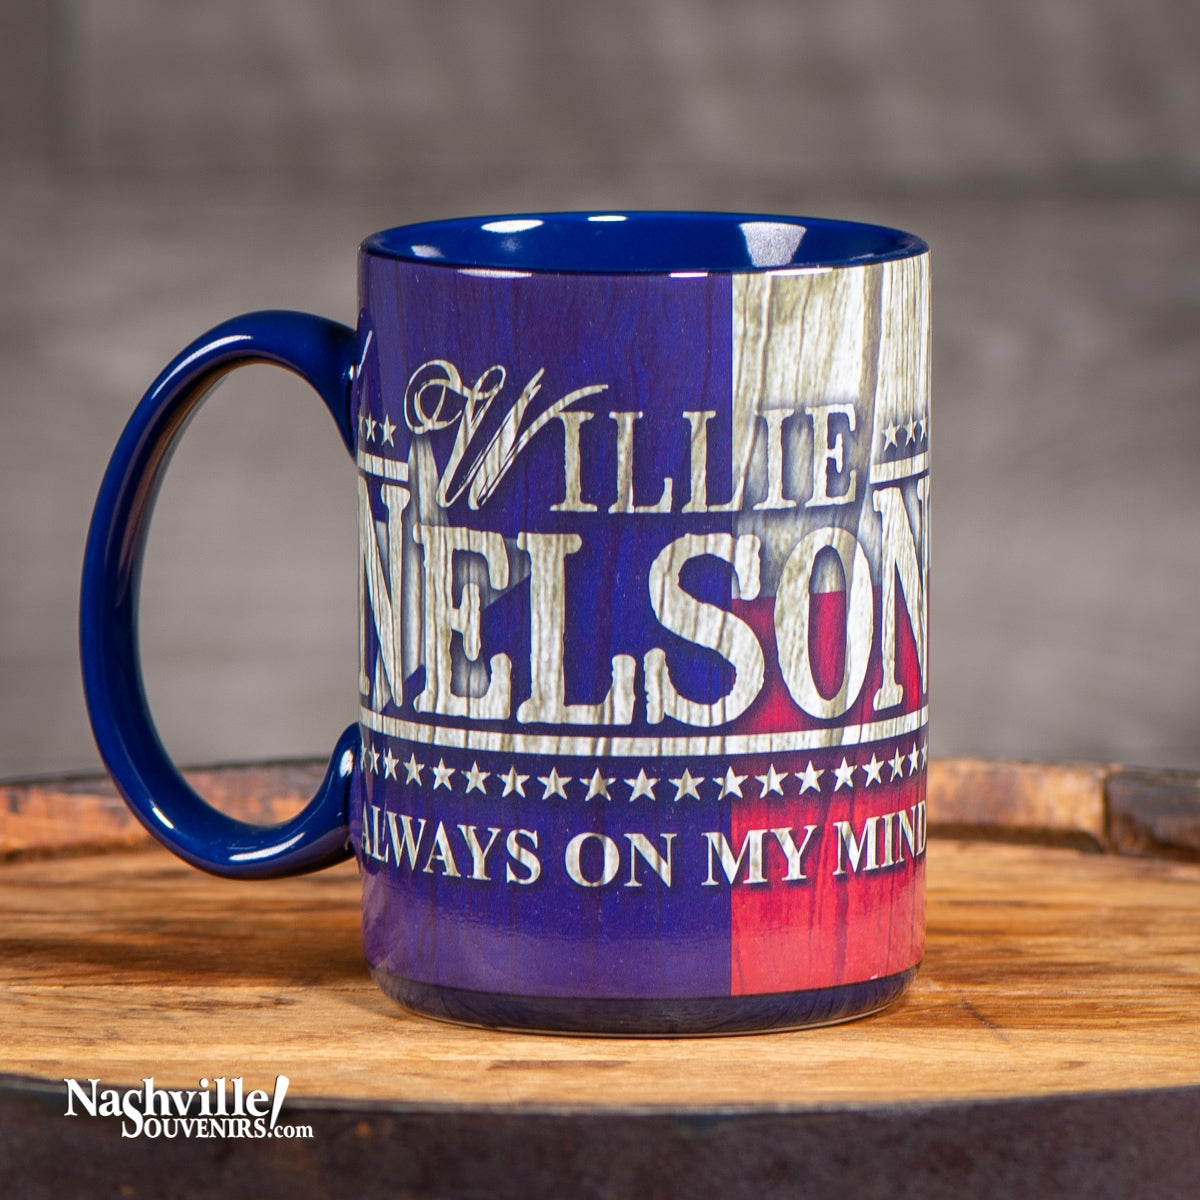 Willie Nelson "Always on my Mind" Mug